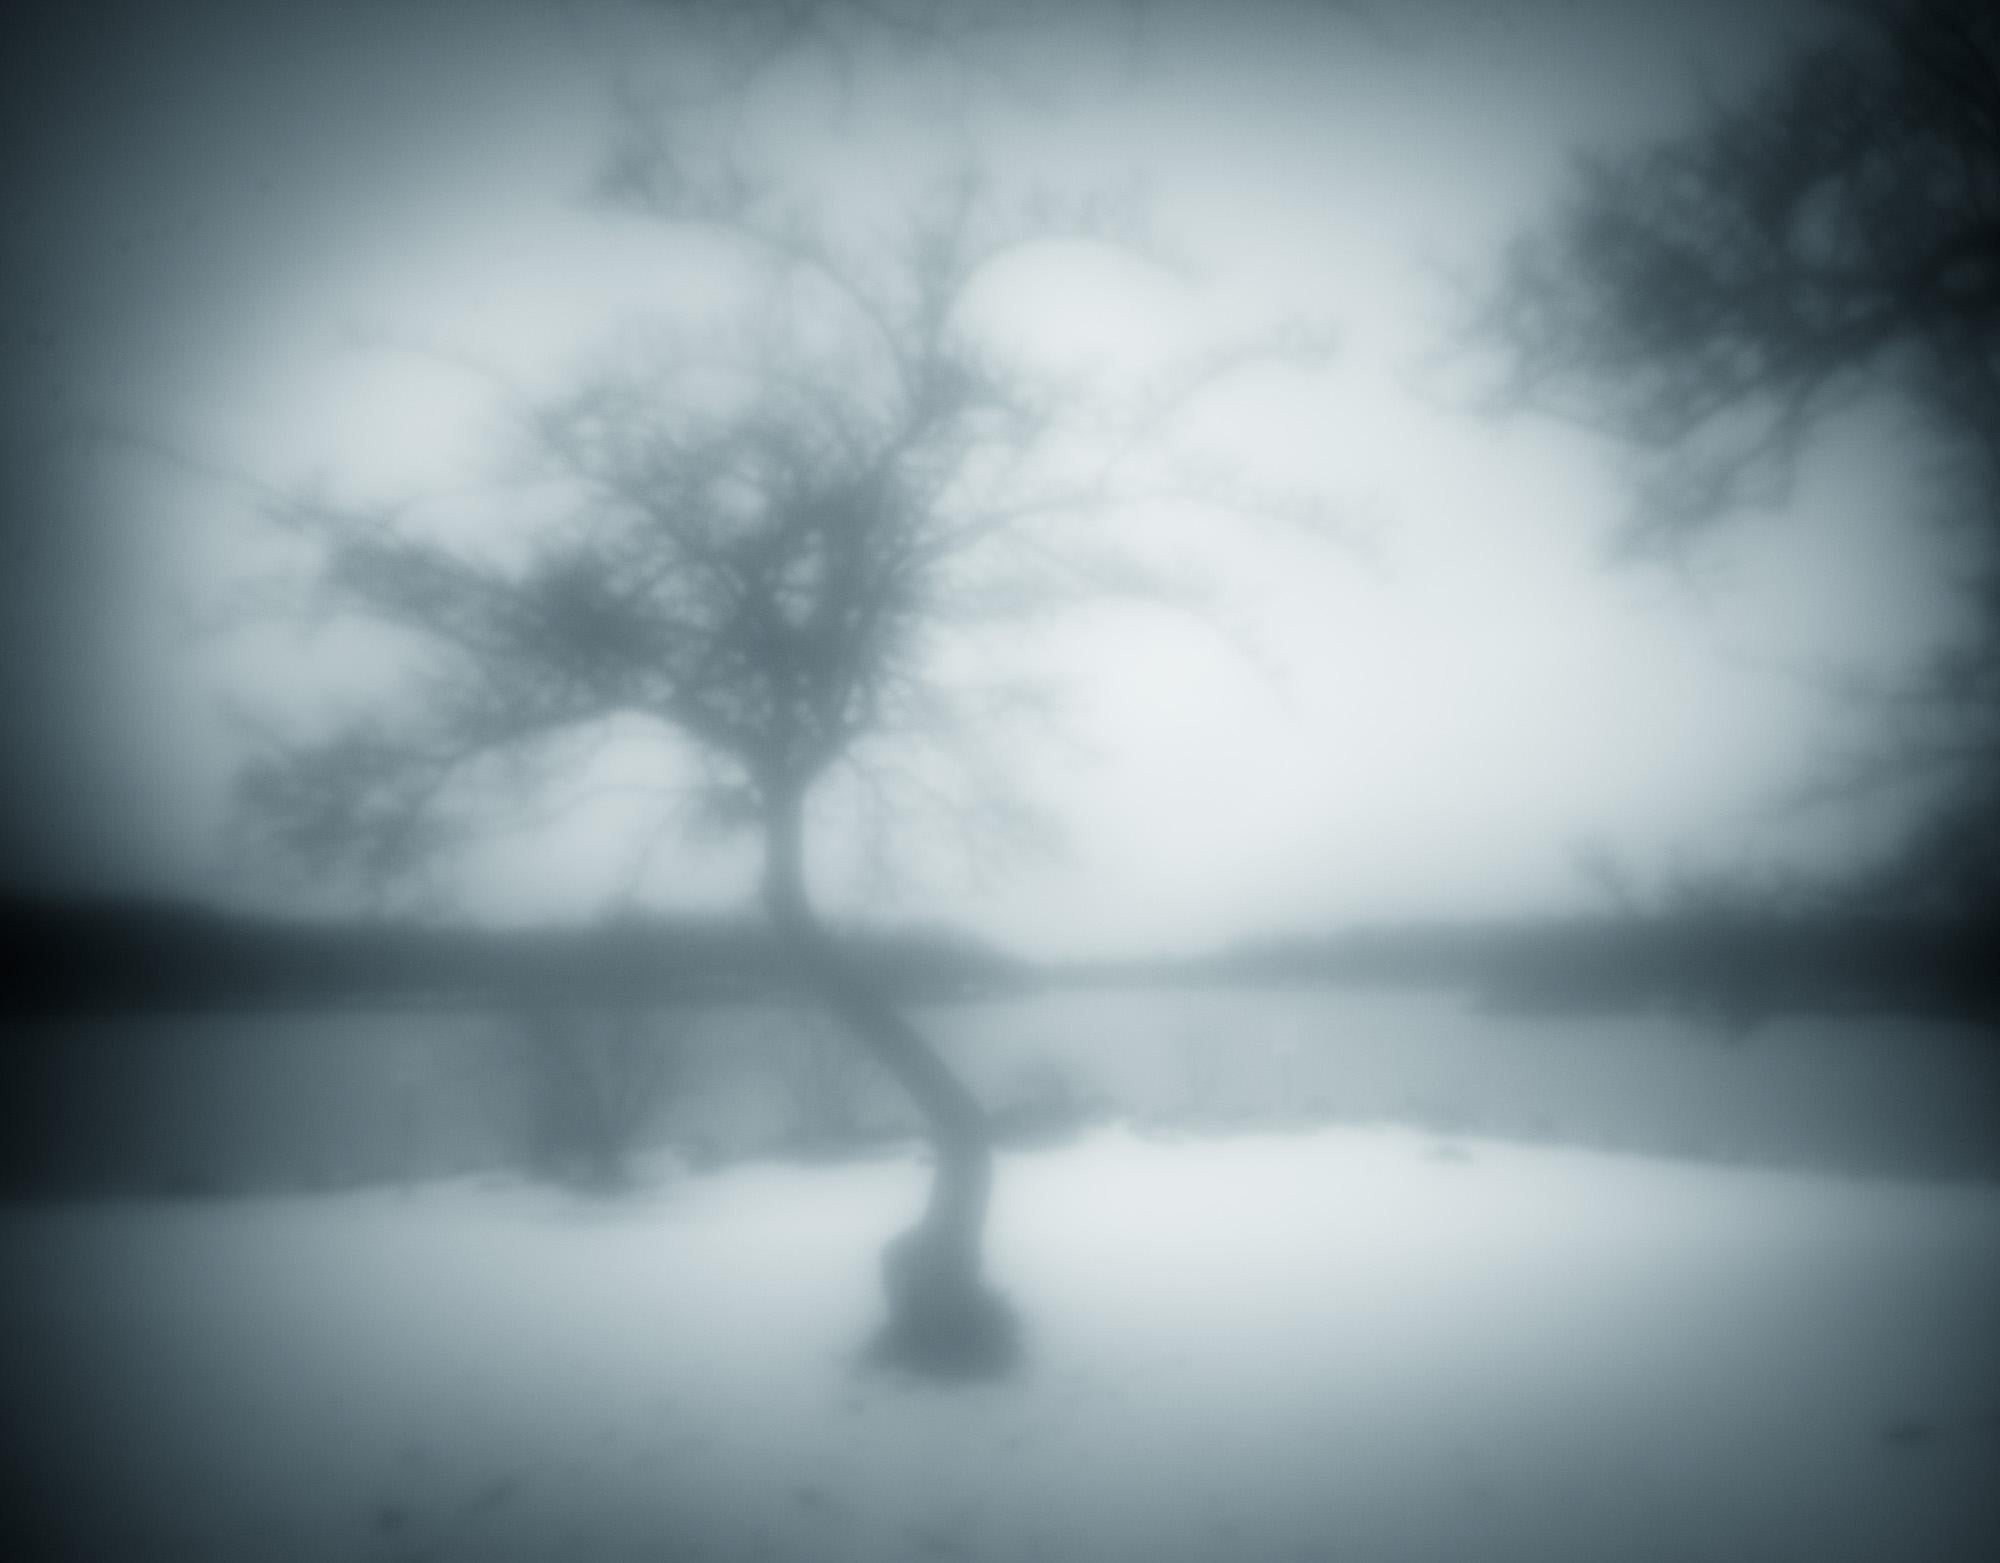 Howard Lewis Landscape Photograph – Limitierte Auflage einer Schwarz-Weiß-Fotografie  "Ein Winterbaum" 20 x 24